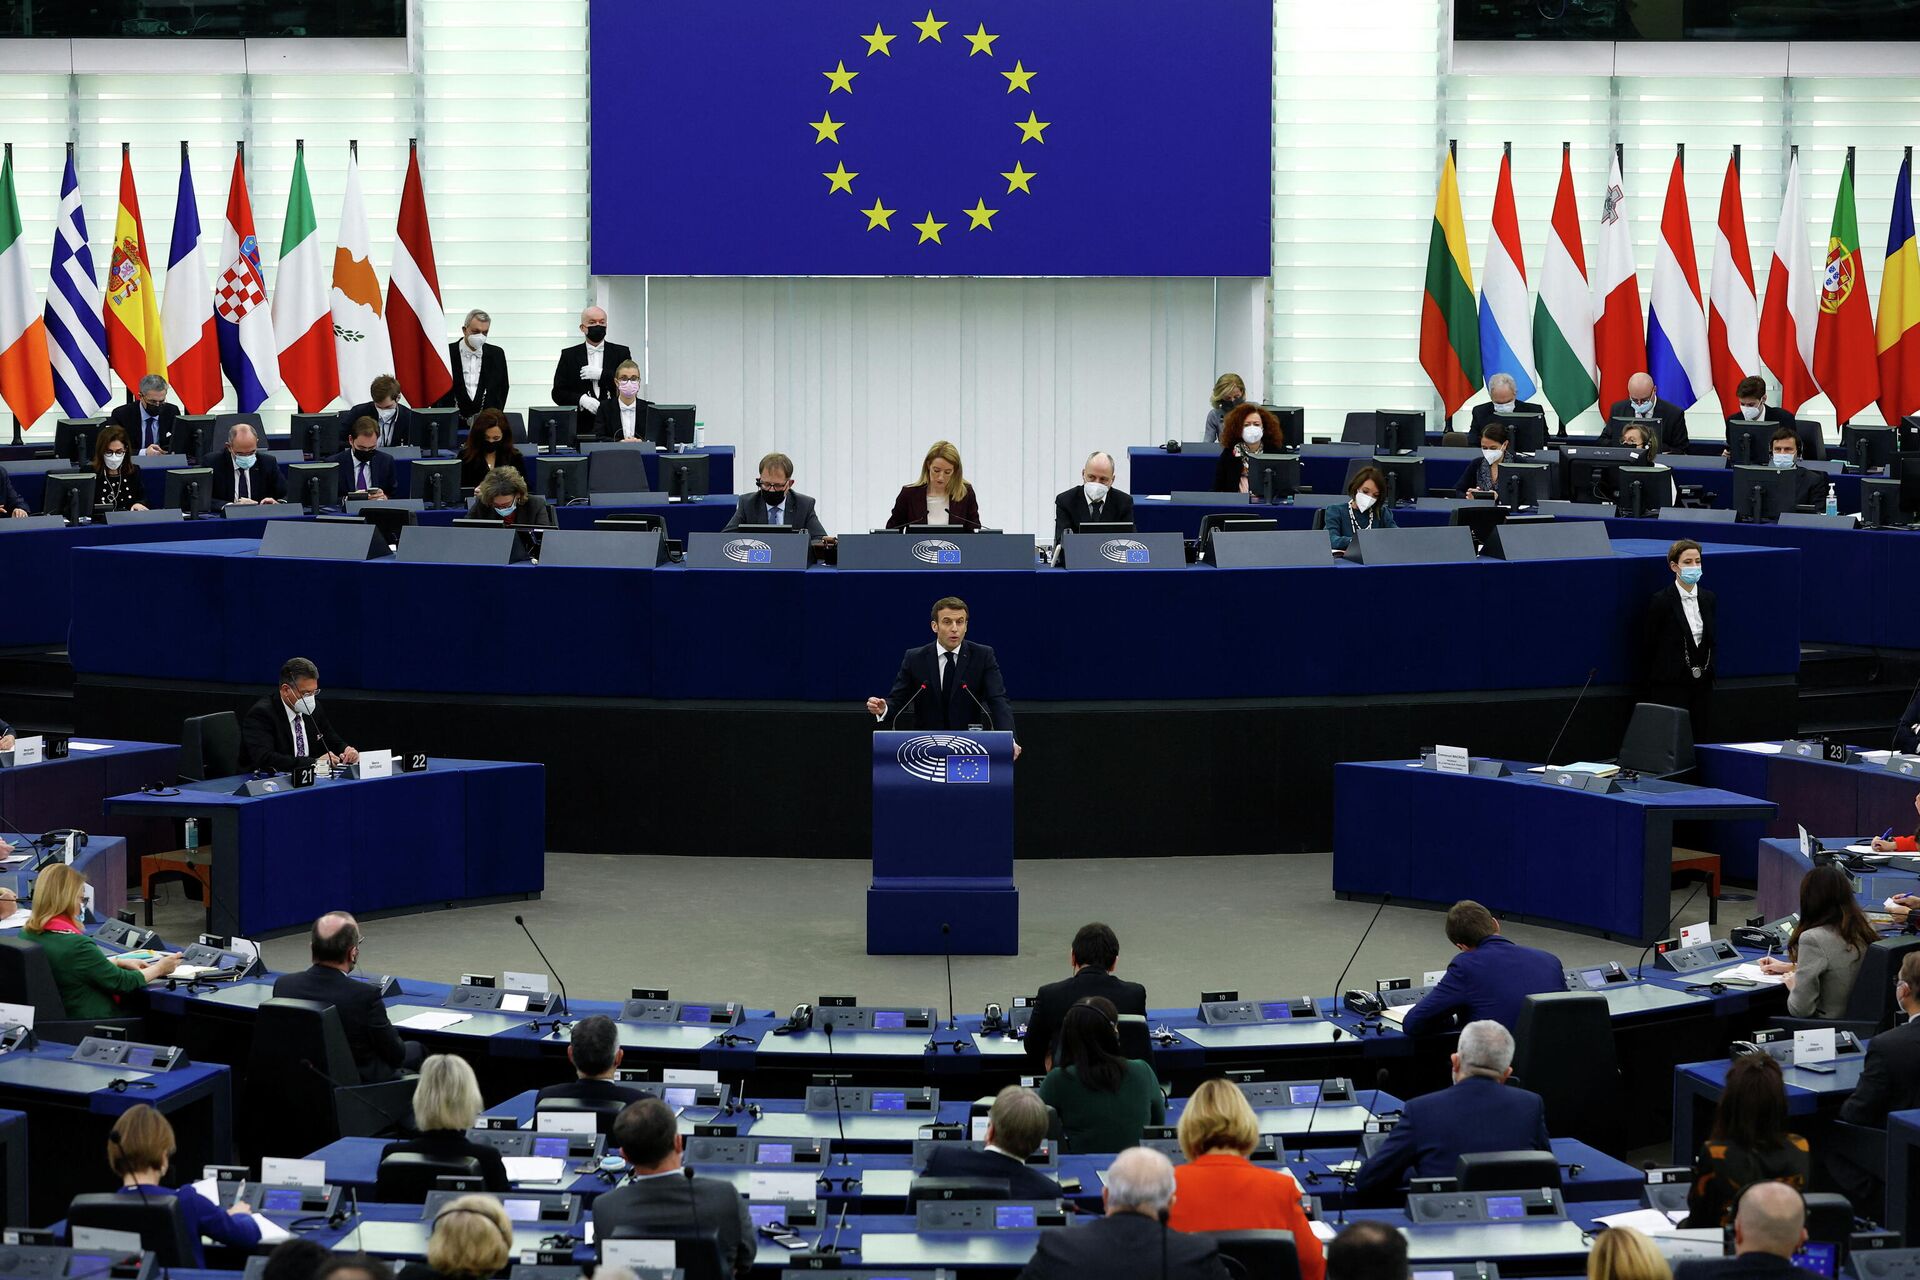 Macron discursa no Parlamento Europeu no início da presidência francesa do Conselho da União Europeia, durante uma sessão plenária em Estrasburgo, França, em 19 de janeiro de 2022 - Sputnik Brasil, 1920, 19.01.2022